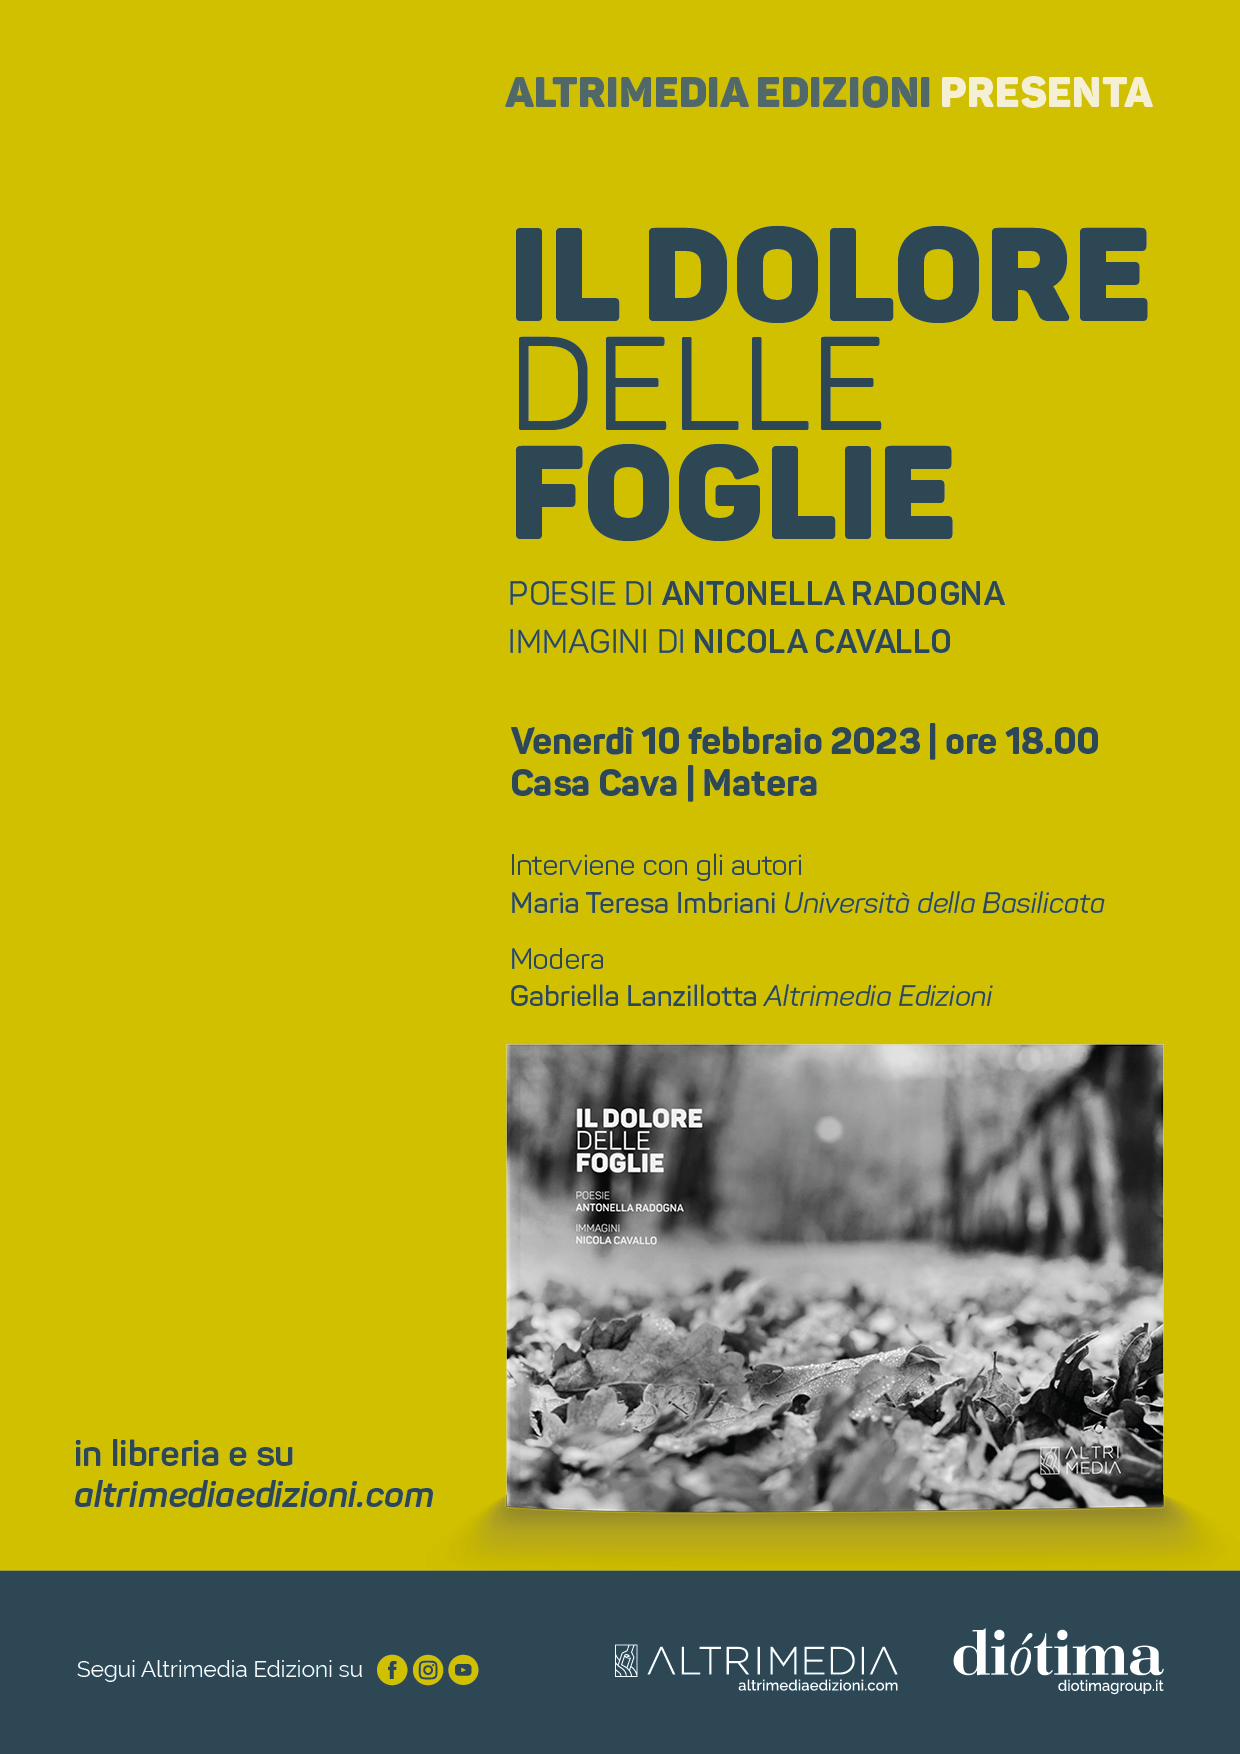 "Il dolore delle foglie", poesie di Antonella Radogna e immagini di Nicola Cavallo. Presentazione il 10 febbraio a Matera